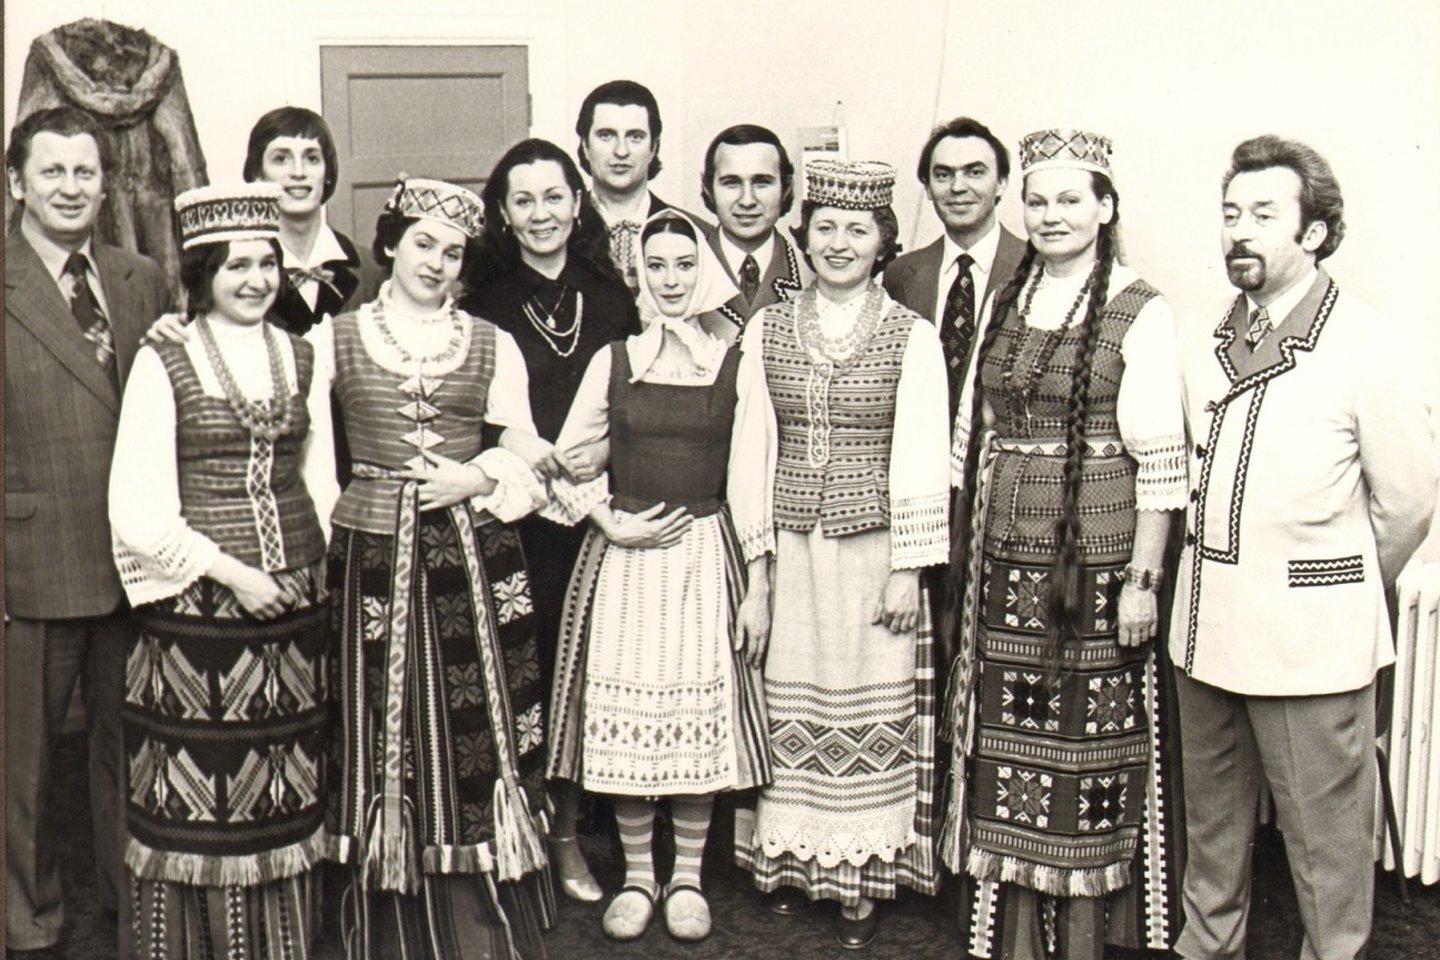  V.Leimontas (dešinėje) su operos artistais.<br> Nuotr. iš LMTA archyvo.